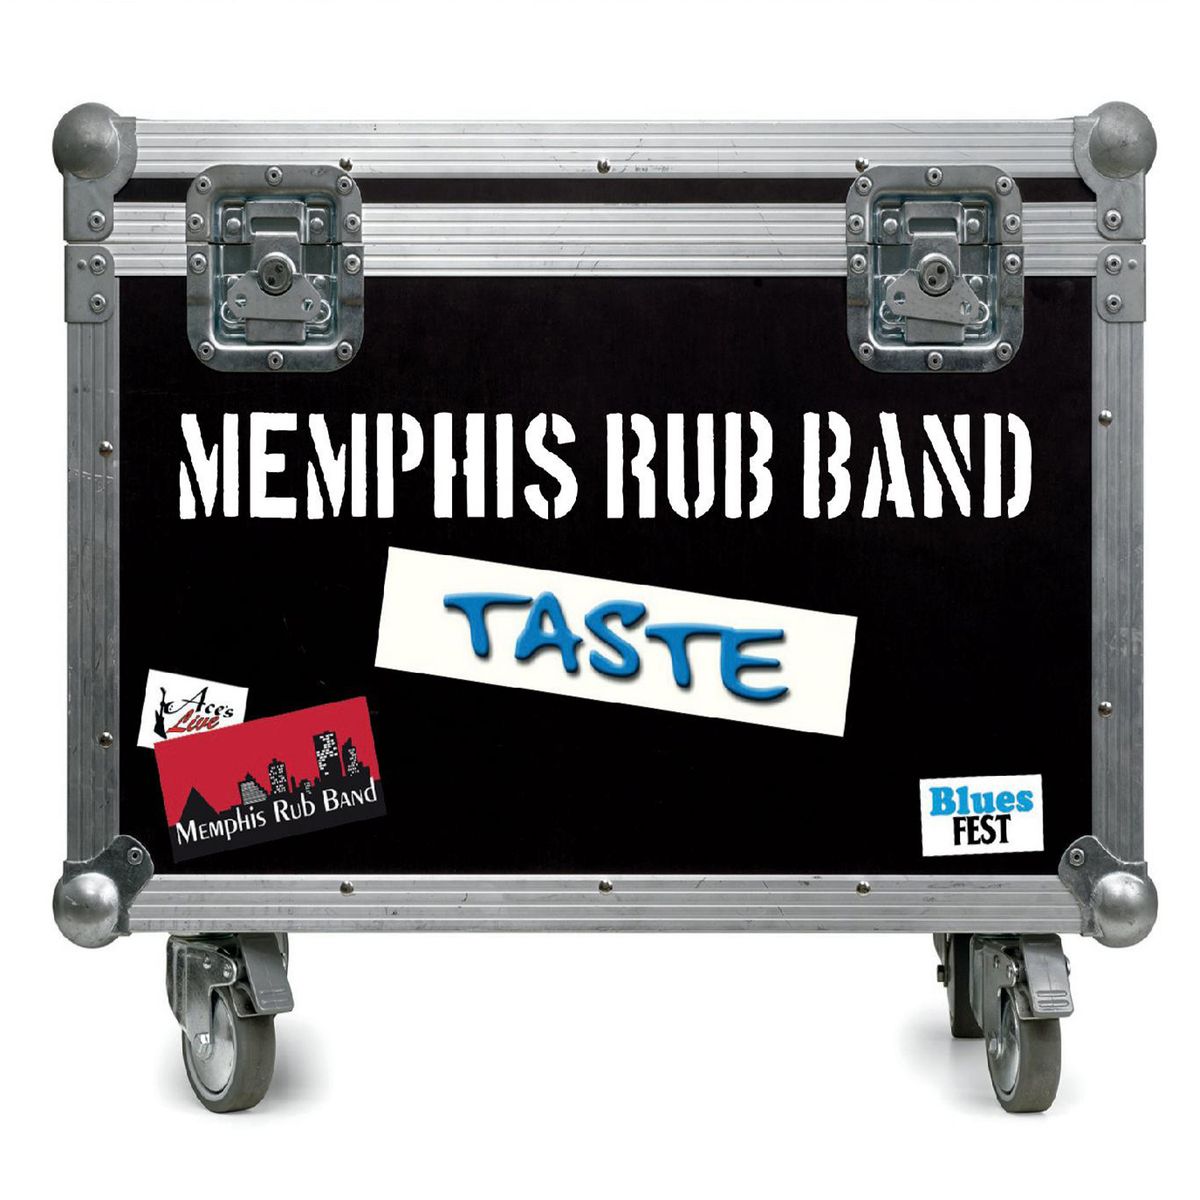 Memphis Rub Band